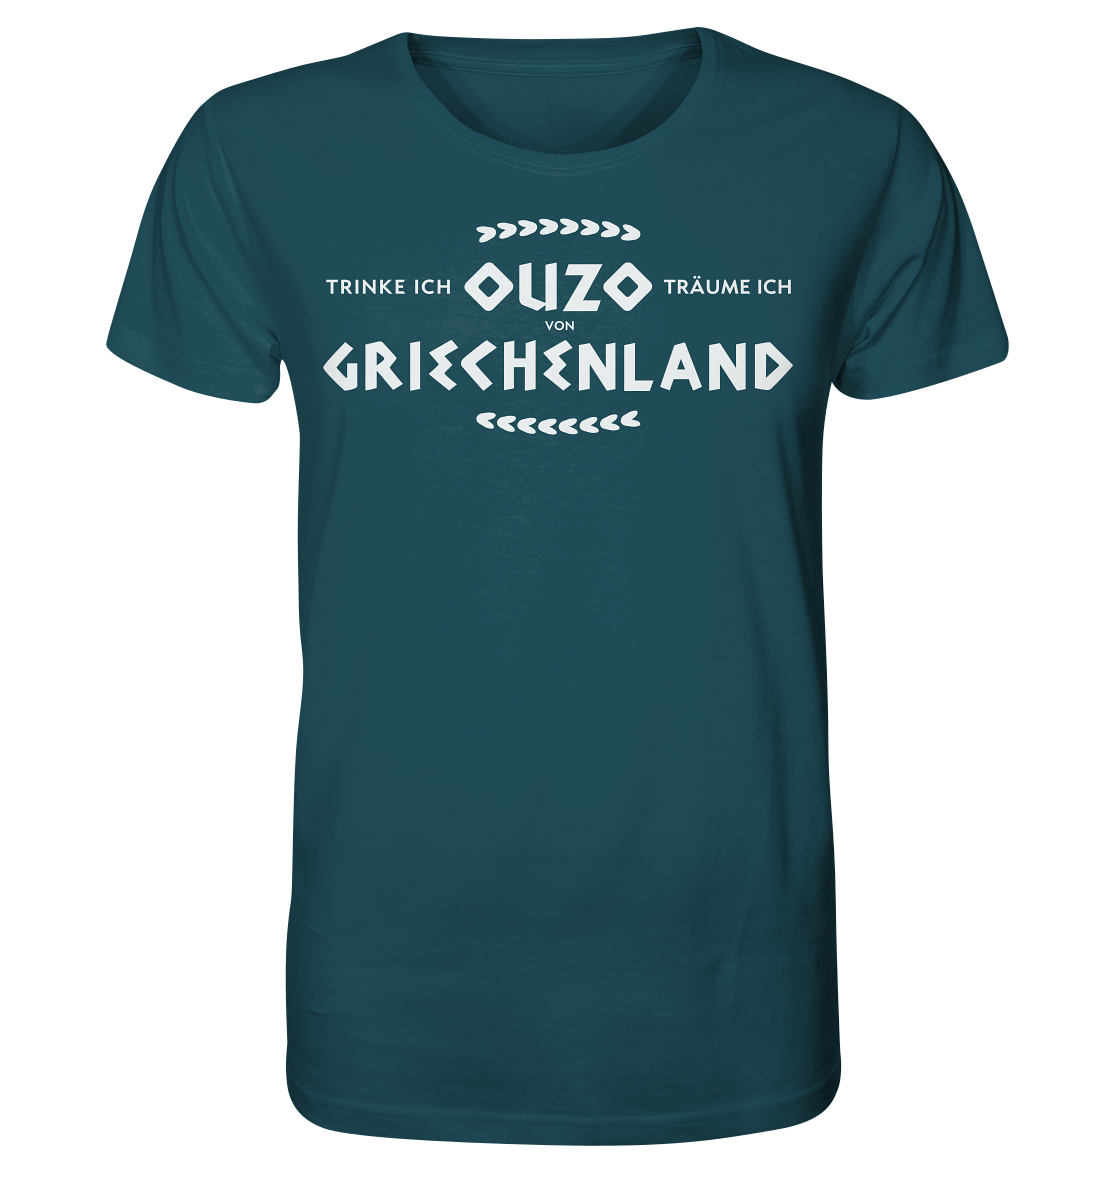 Trinke ich Ouzo träume ich von Griechenland - Organic Shirt